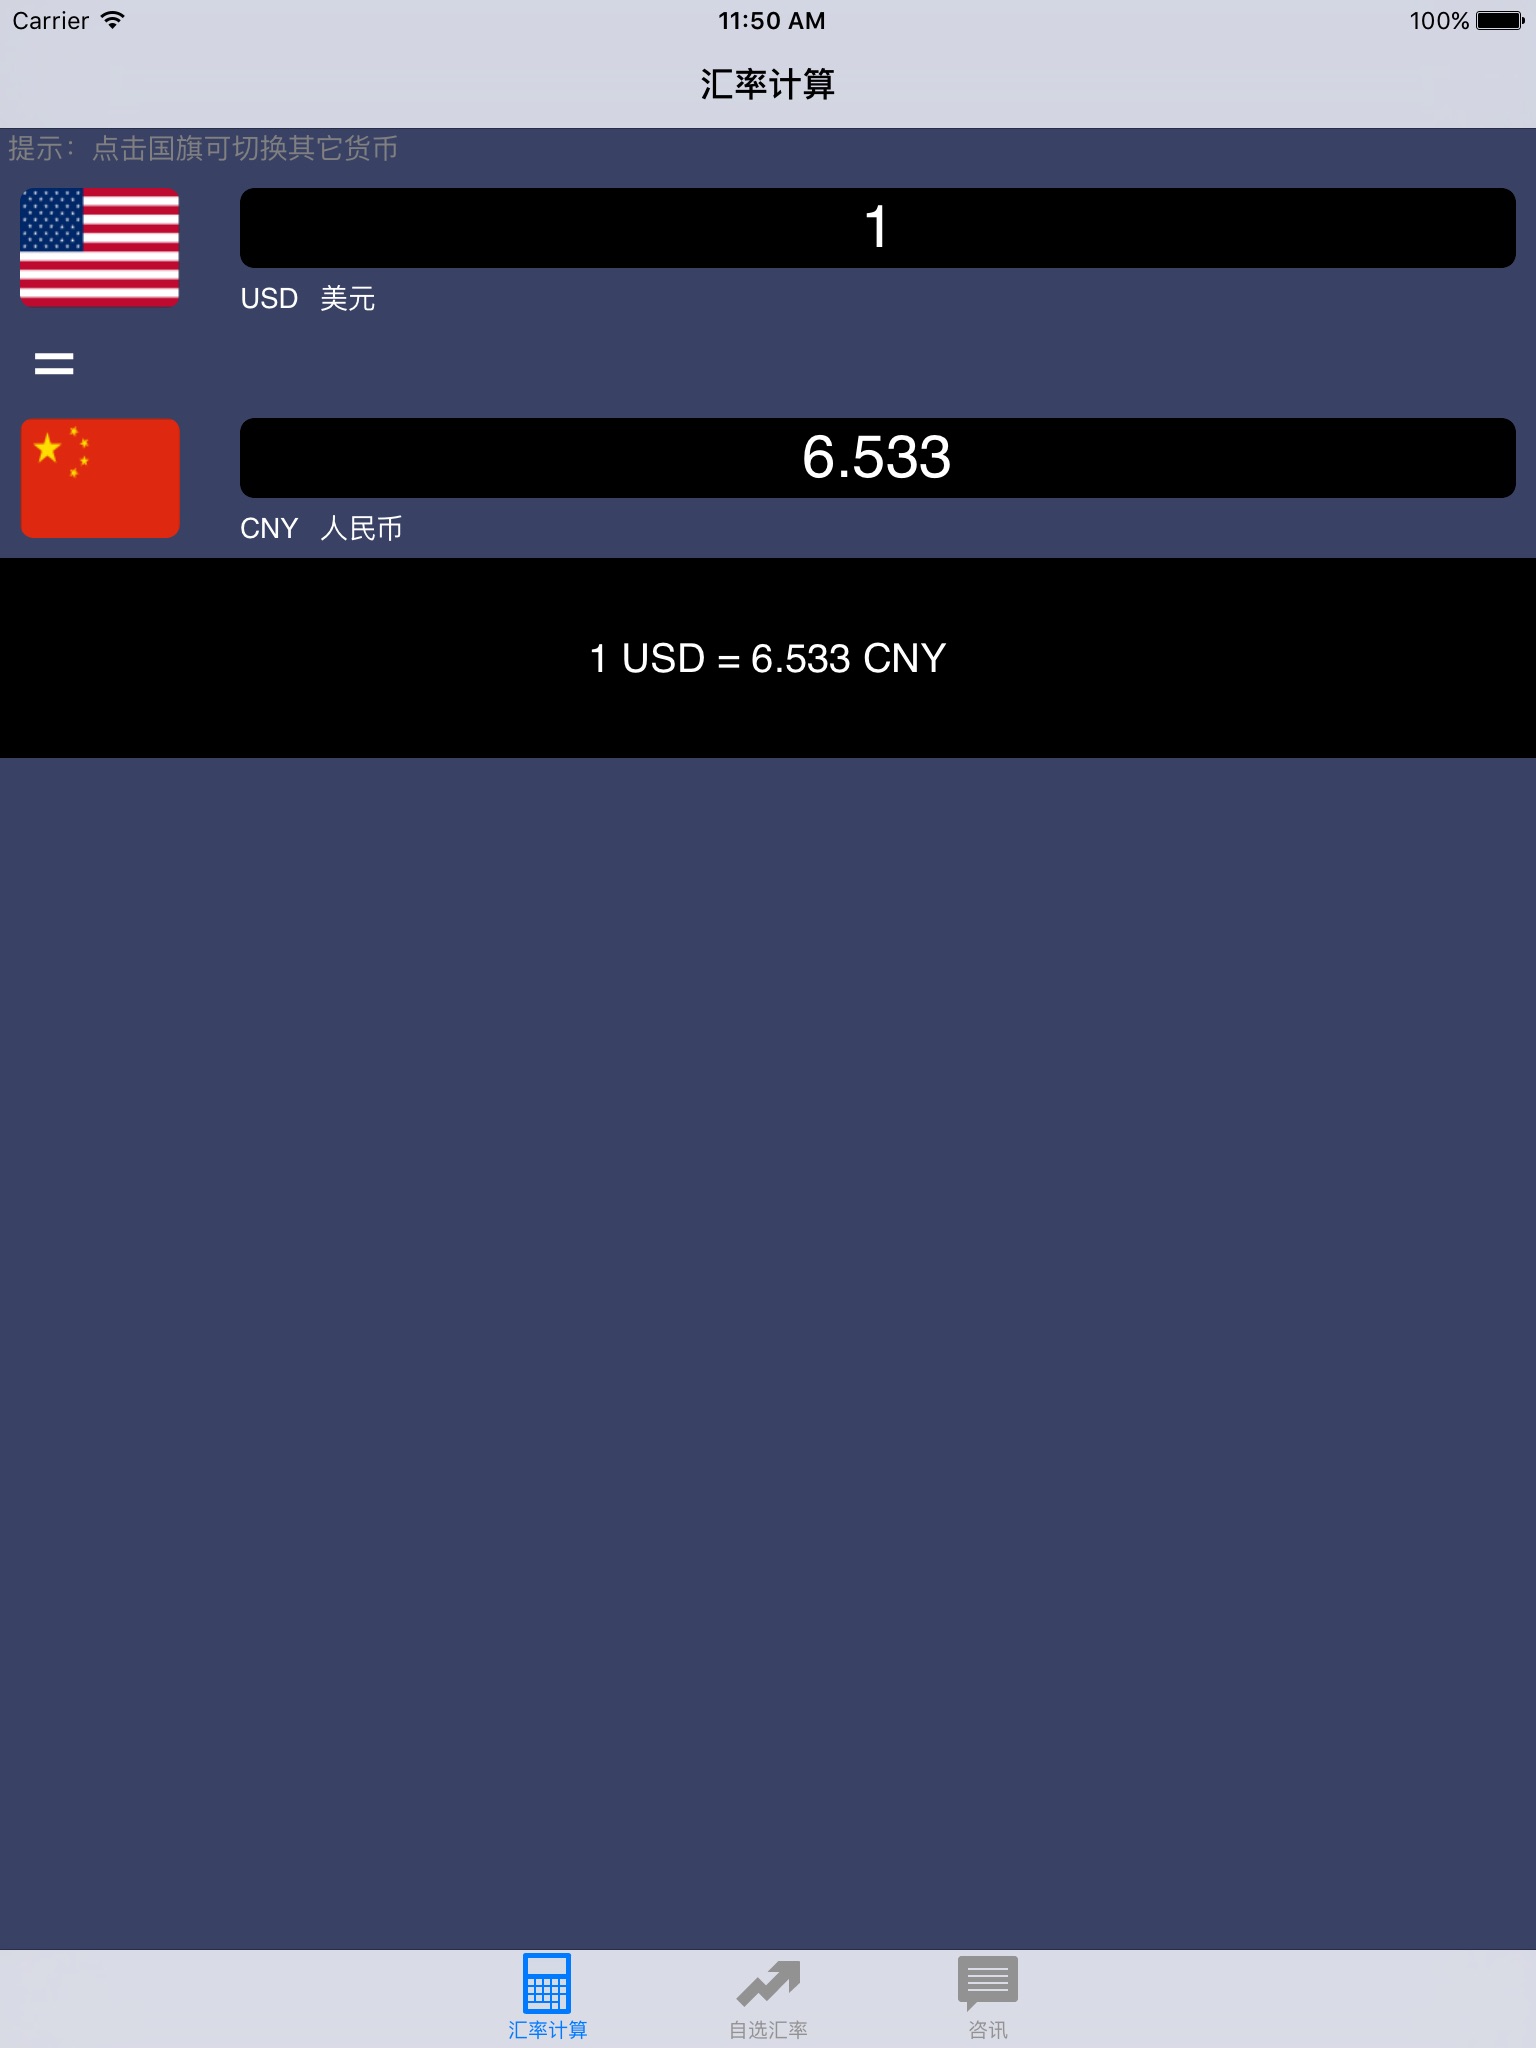 外汇助手 - 支持全球所有汇率 - 数据实时更新 screenshot 2